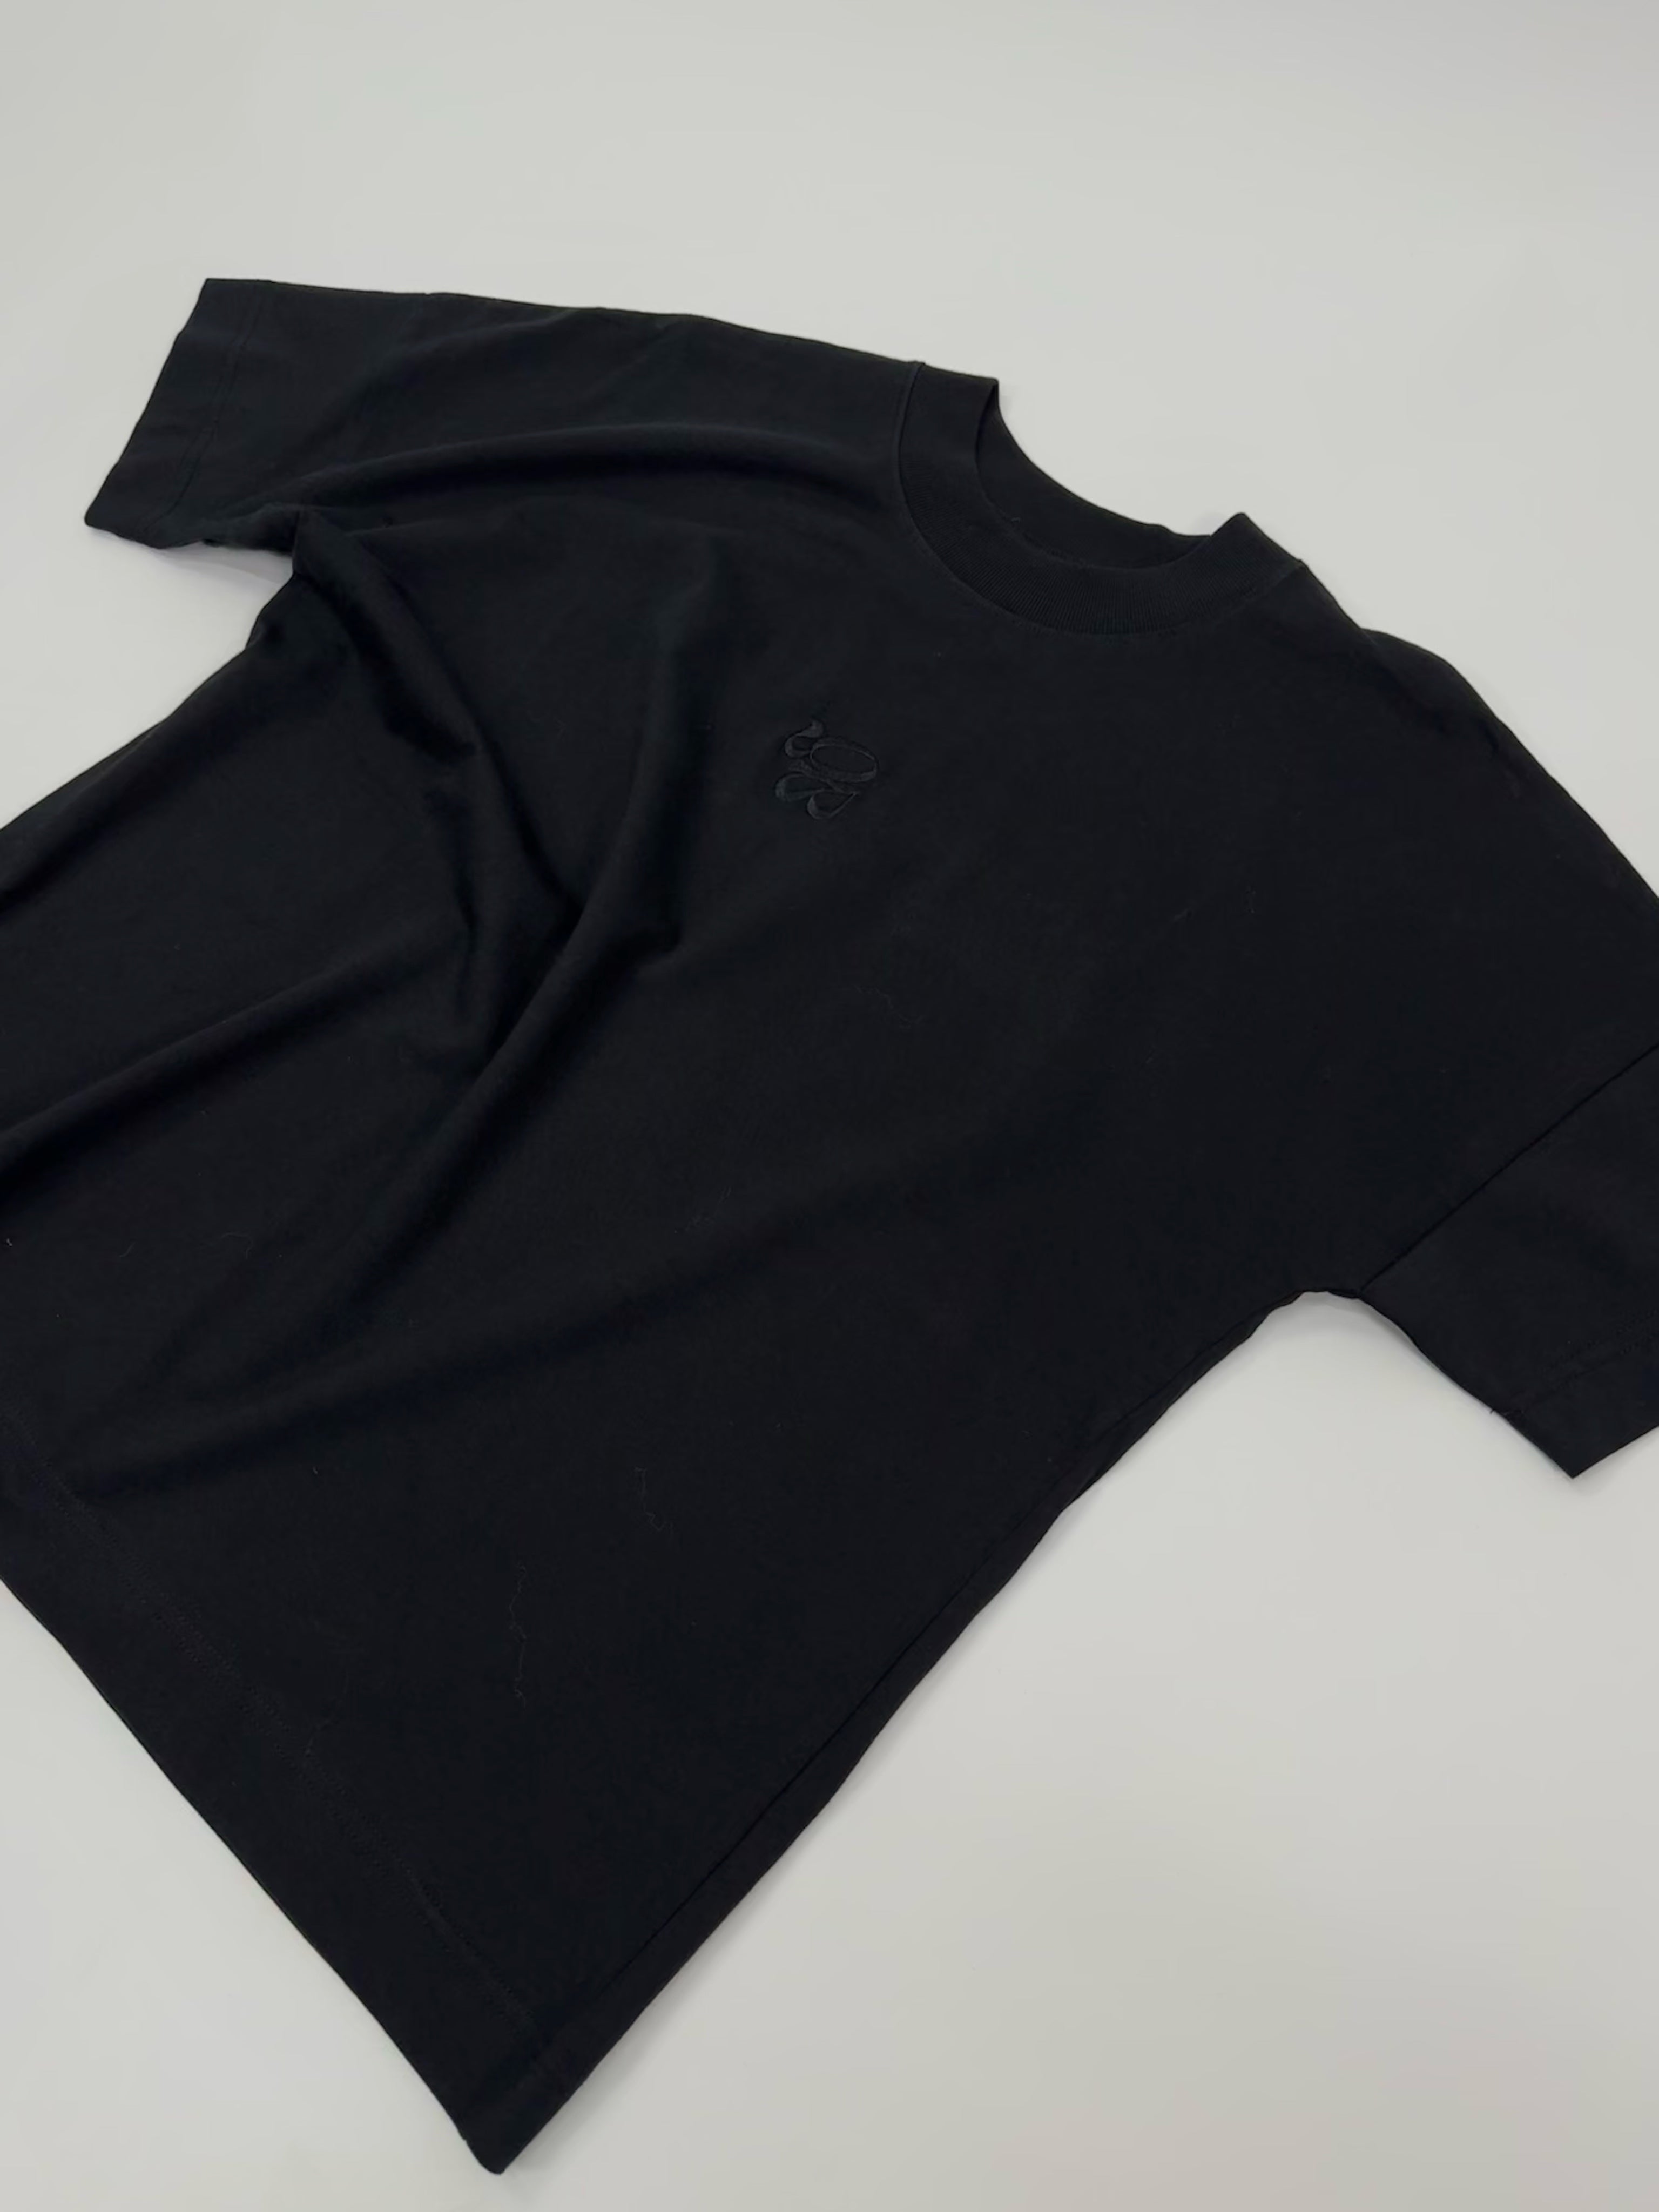 BQ Shirt All Black | Fair Fashion | Unisex